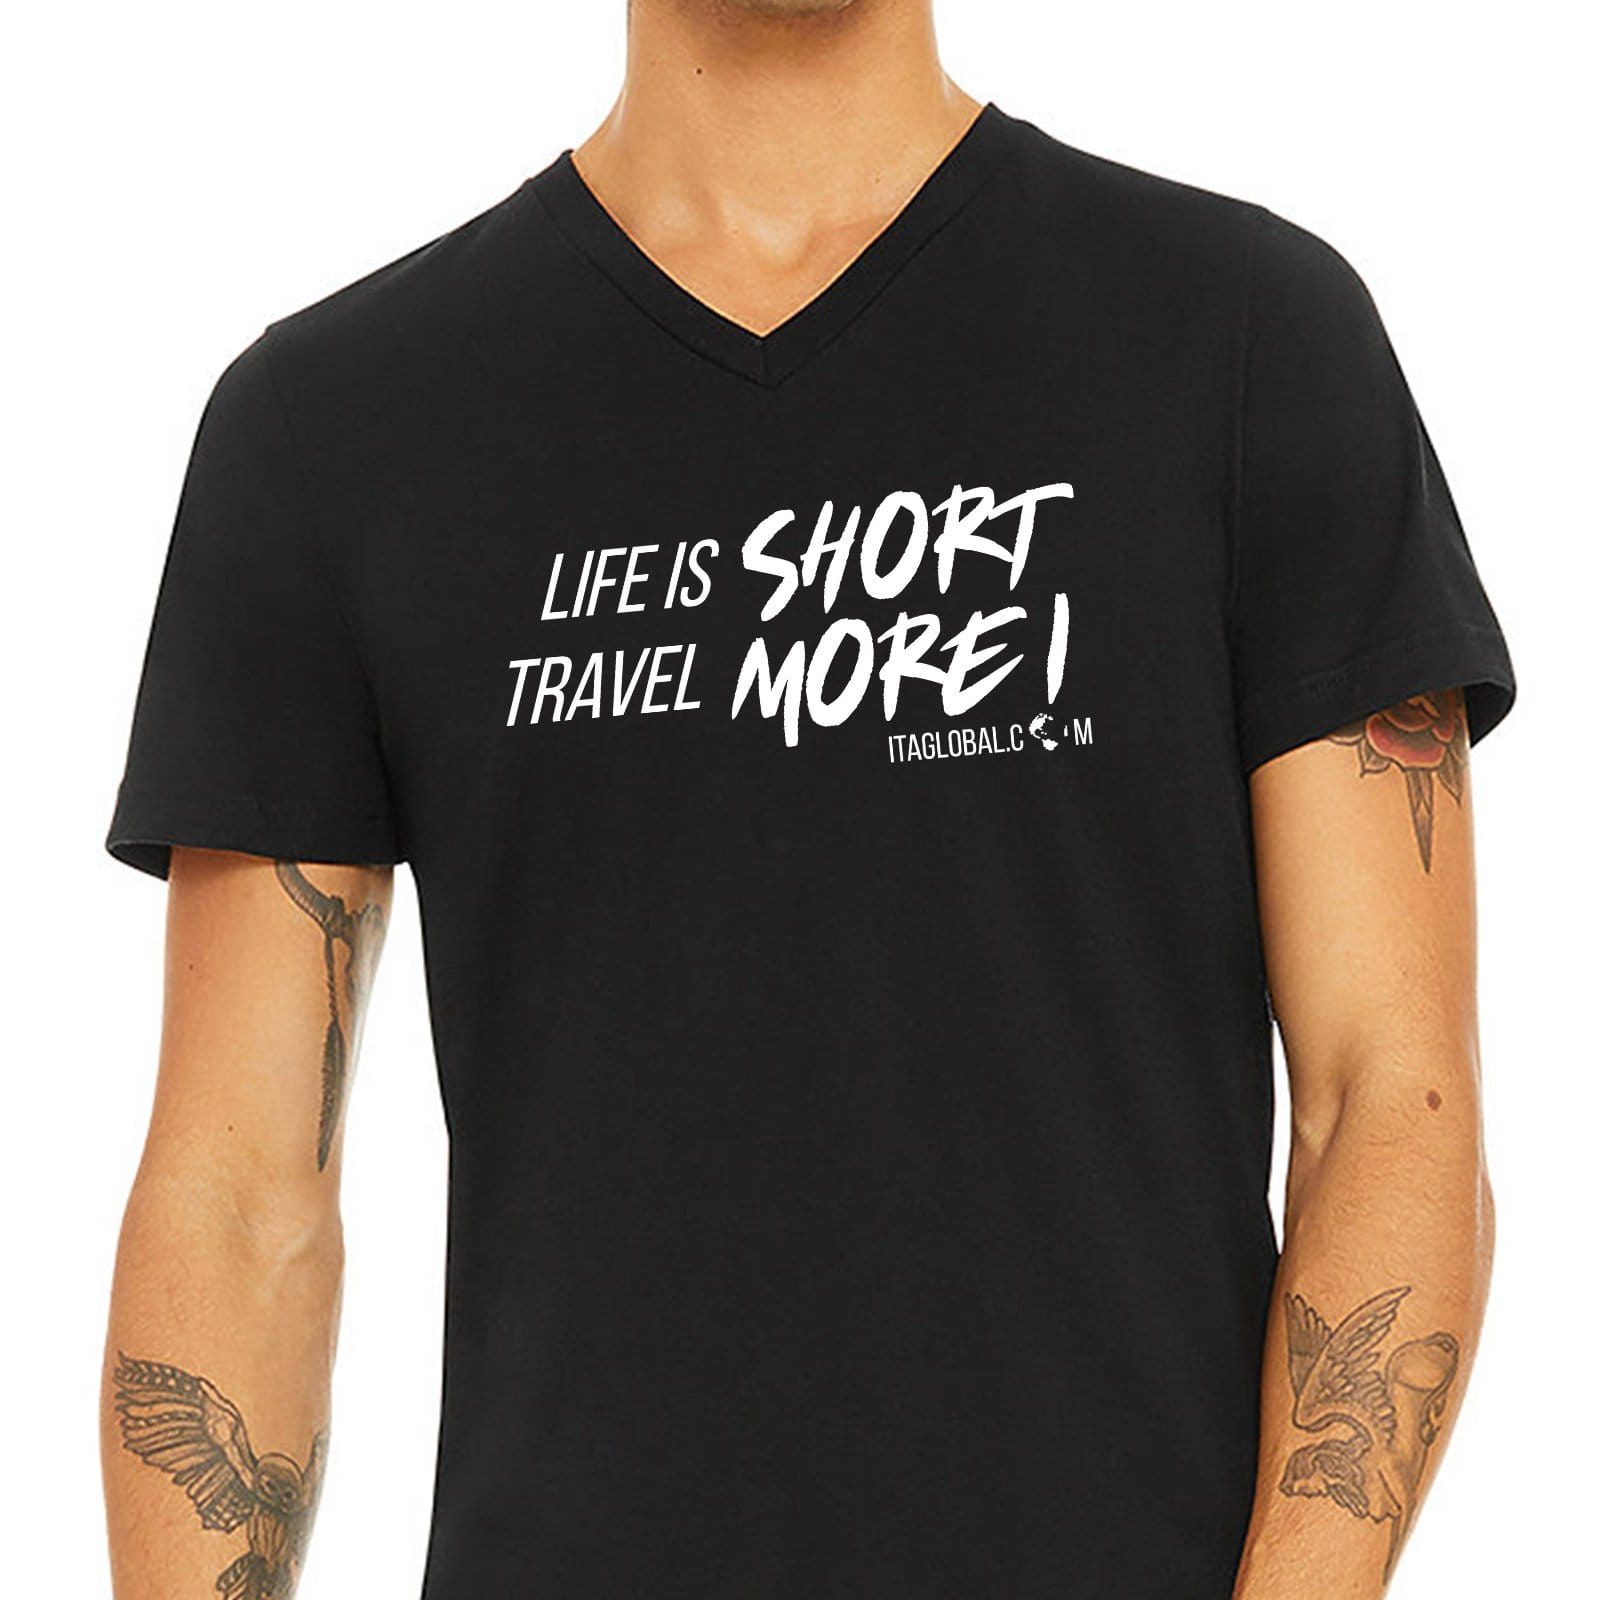 Life Is Short Travel More V Neck Black T-Shirt for Men S